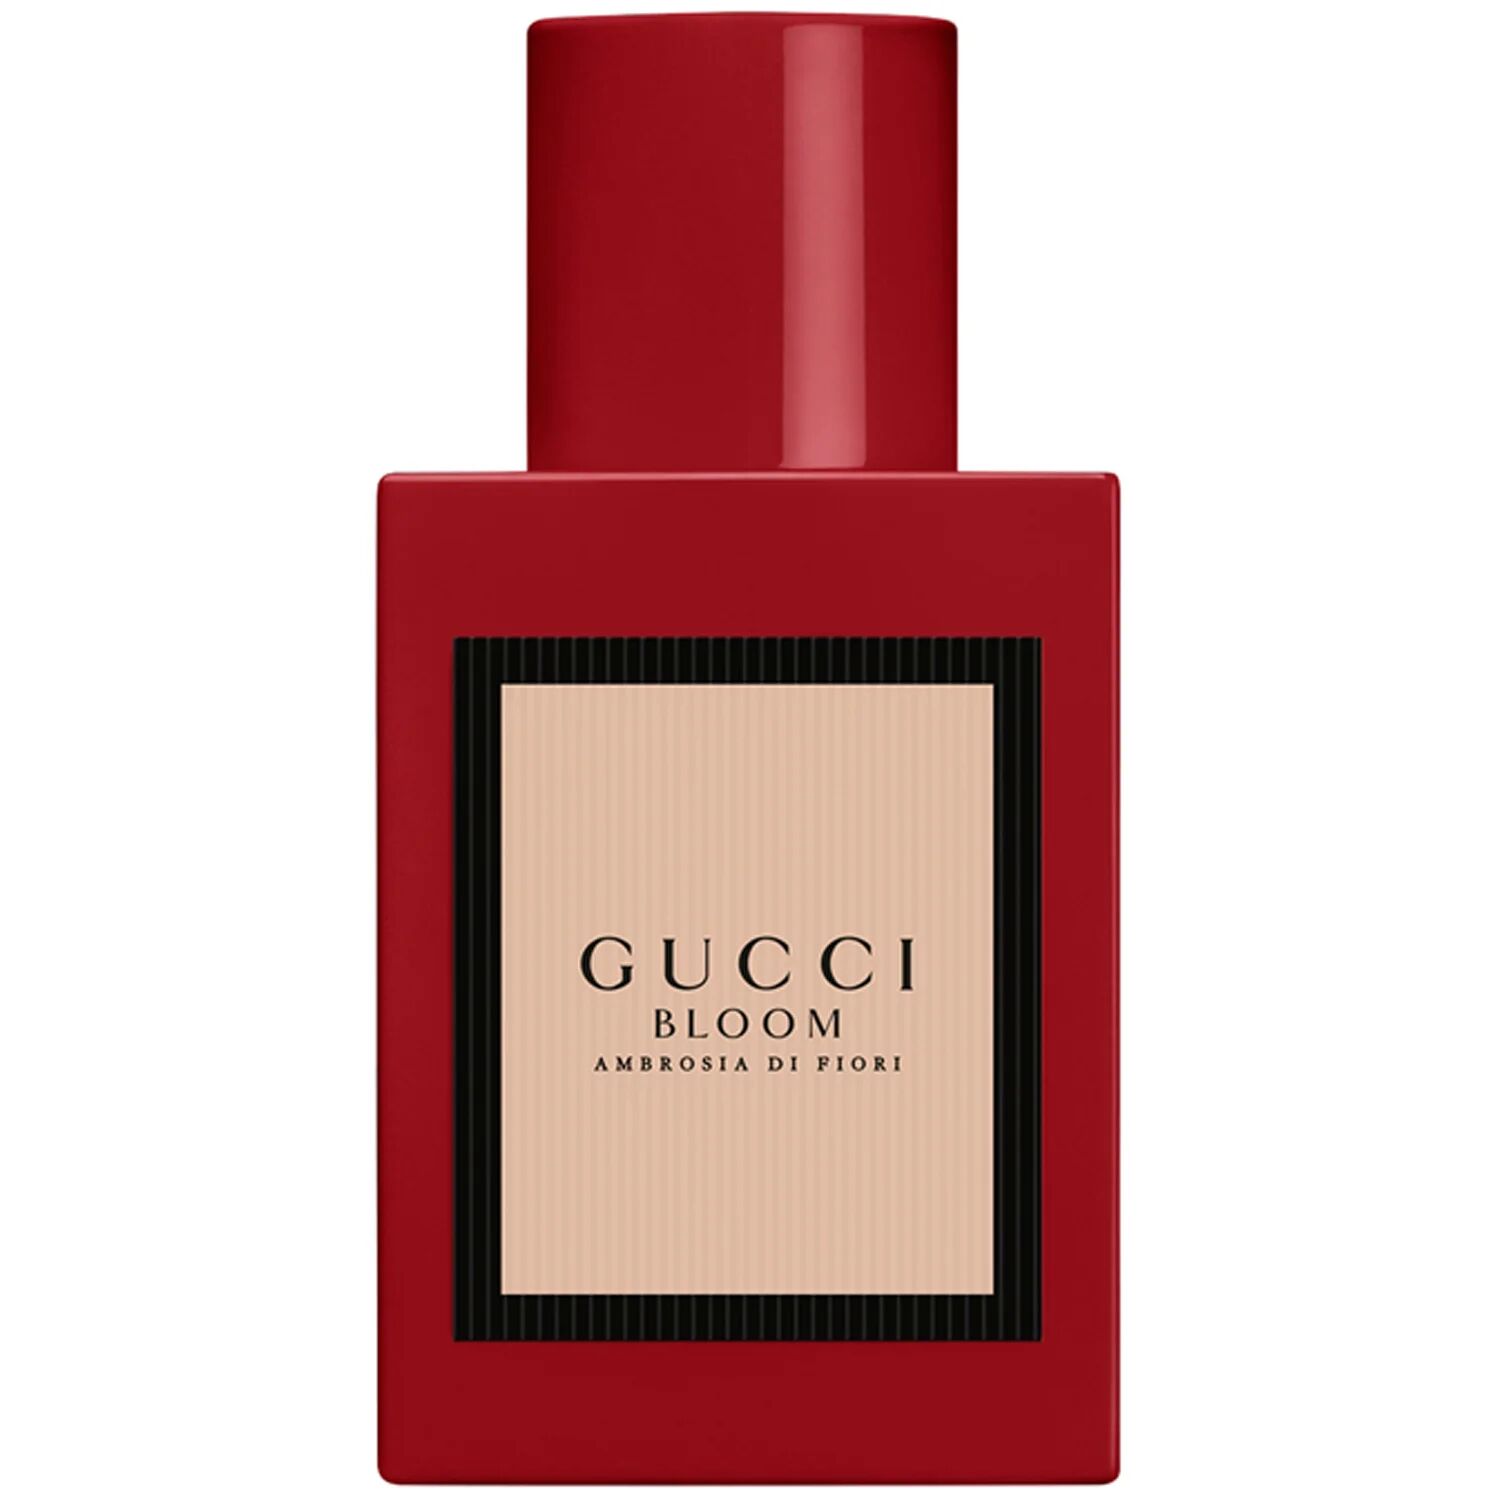 Gucci Bloom Ambrosia Di Fiori, 30 ml Gucci Parfyme